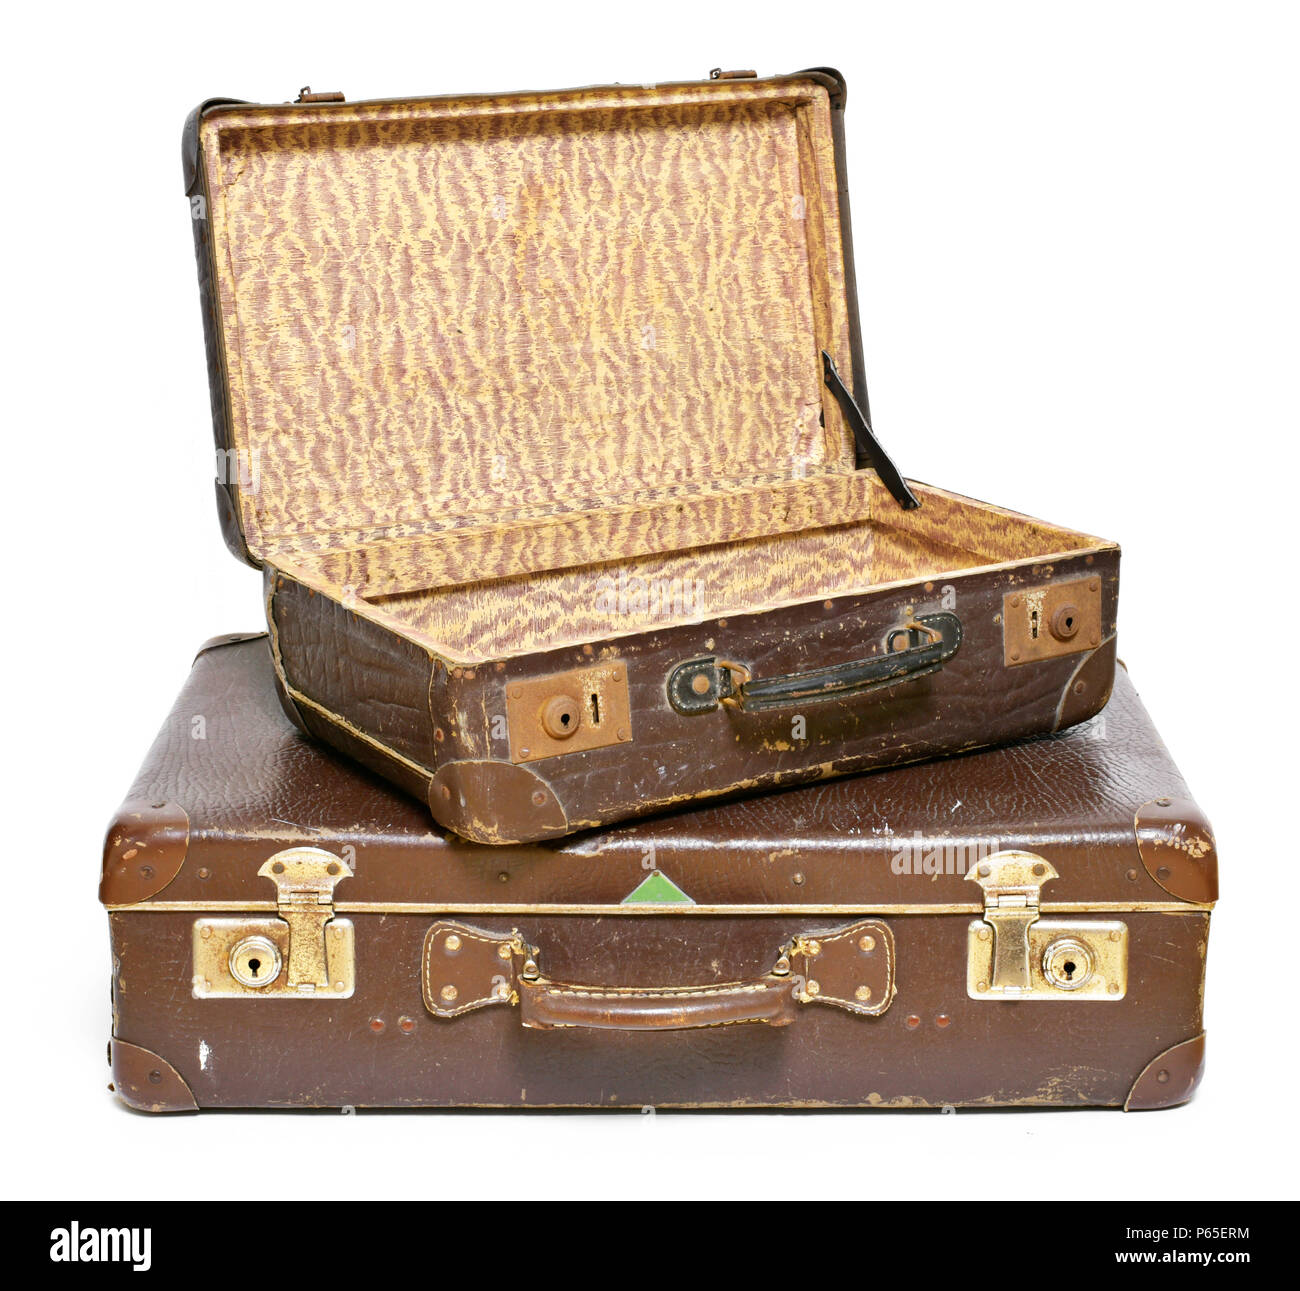 Alte Koffer, Reise, Gepäck oder Gepäck. Vintage Koffer, retro, leder Koffer,  auf weißem Hintergrund Stockfotografie - Alamy